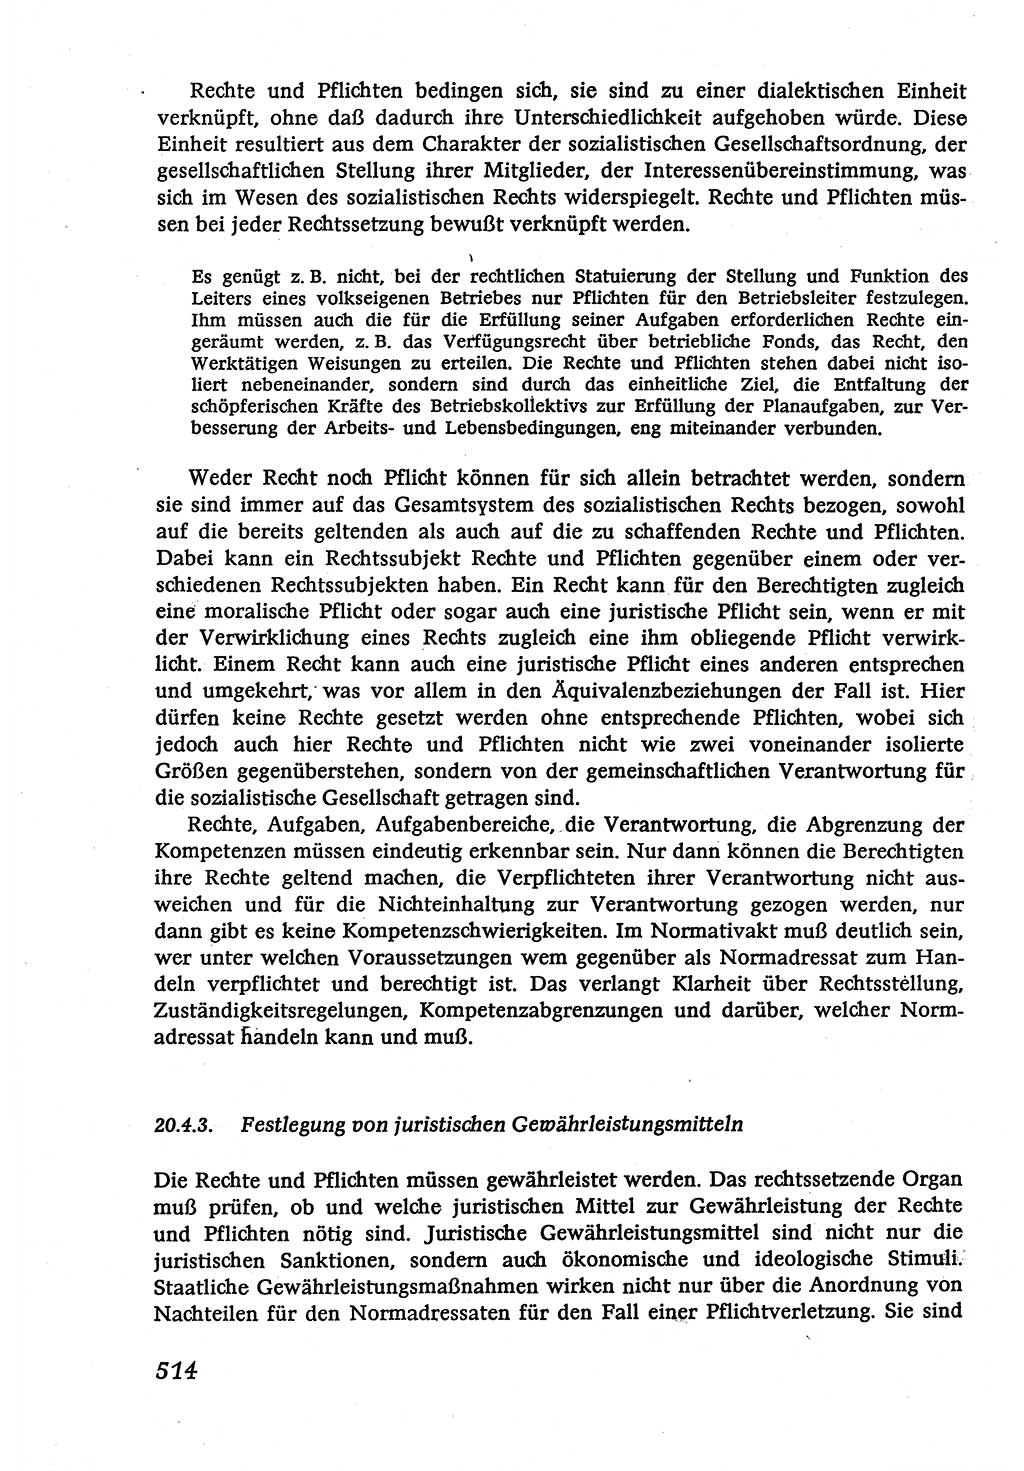 Marxistisch-leninistische (ML) Staats- und Rechtstheorie [Deutsche Demokratische Republik (DDR)], Lehrbuch 1980, Seite 514 (ML St.-R.-Th. DDR Lb. 1980, S. 514)